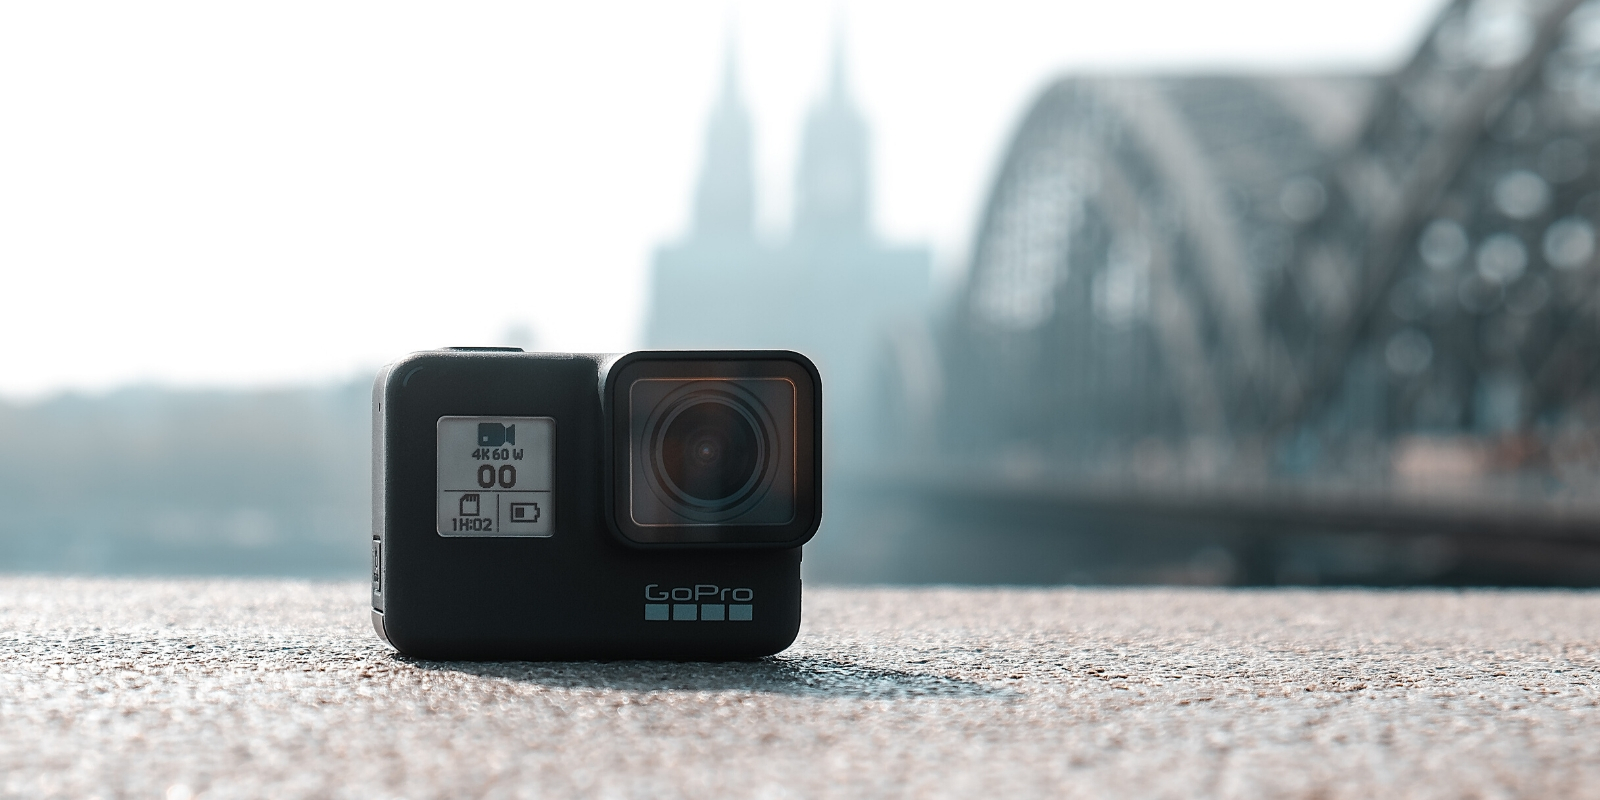 La GoPro HERO7 Black, une caméra haute définition polyvalente, actuellement en promotion. © Unsplash 